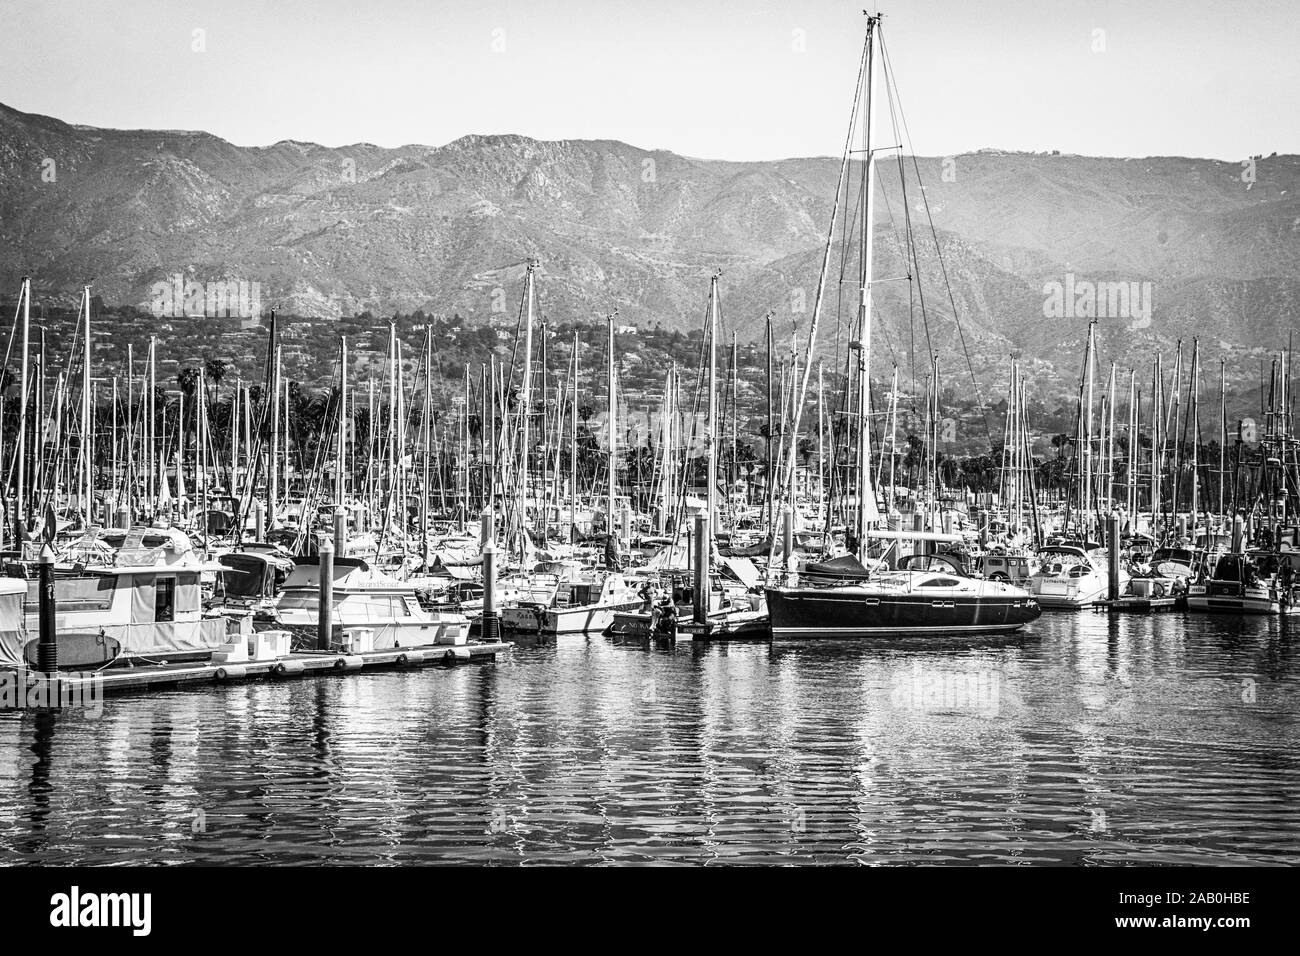 Meistens Segelboote, angedockt an der Marina in den Hafen von Santa Barbara mit einer Fernsicht auf den Santa Ynez Mountains und Ausläufern in Santa Barbara, CA Stockfoto